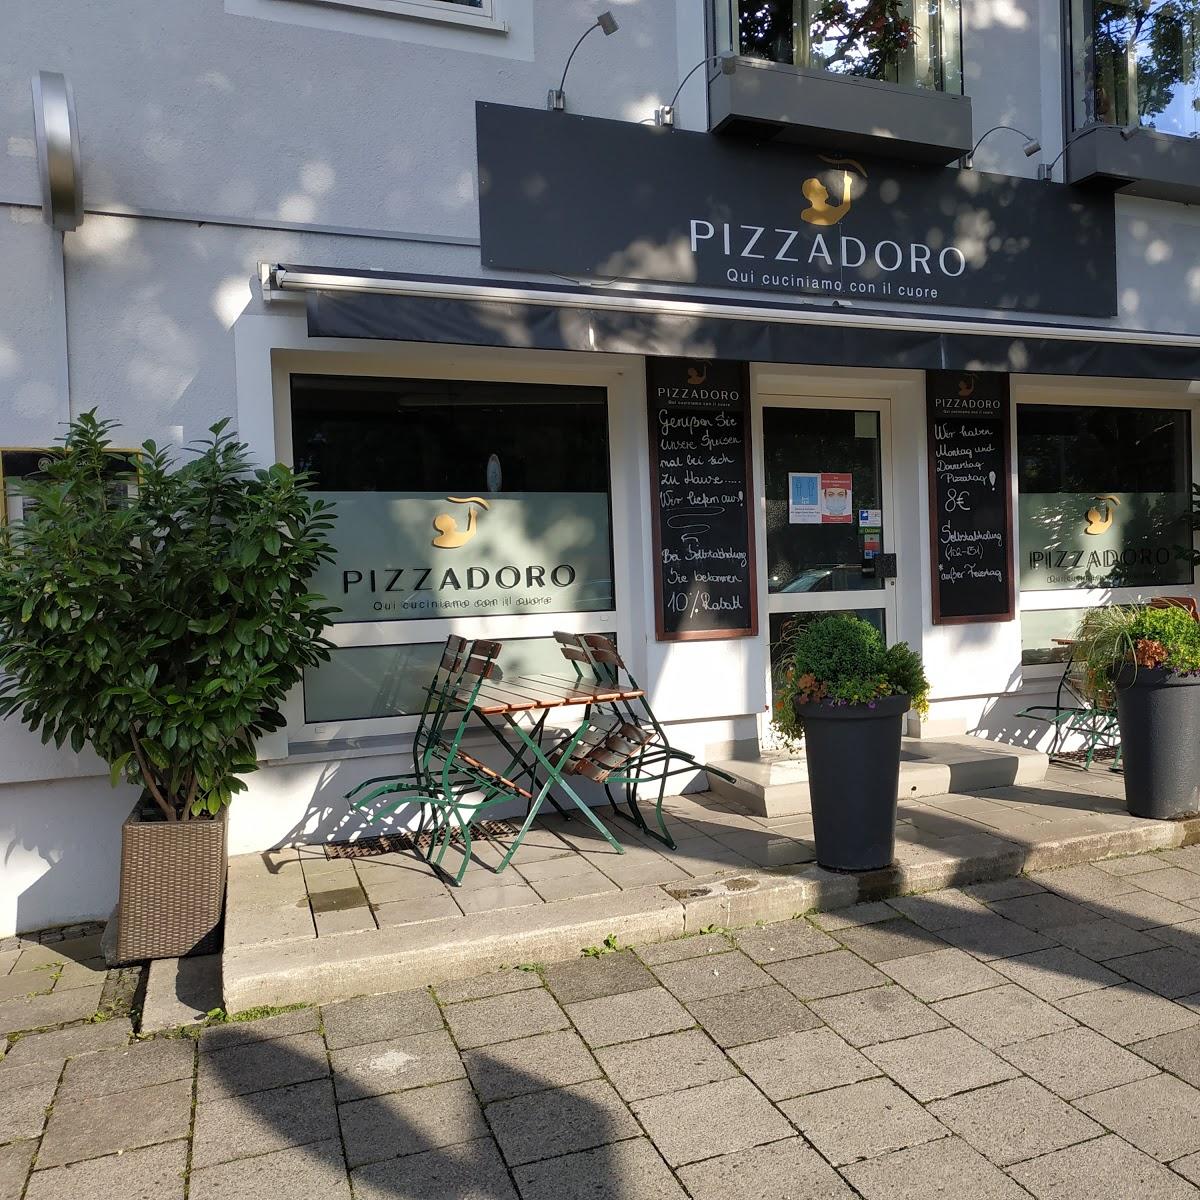 Restaurant "Pizzadoro" in München